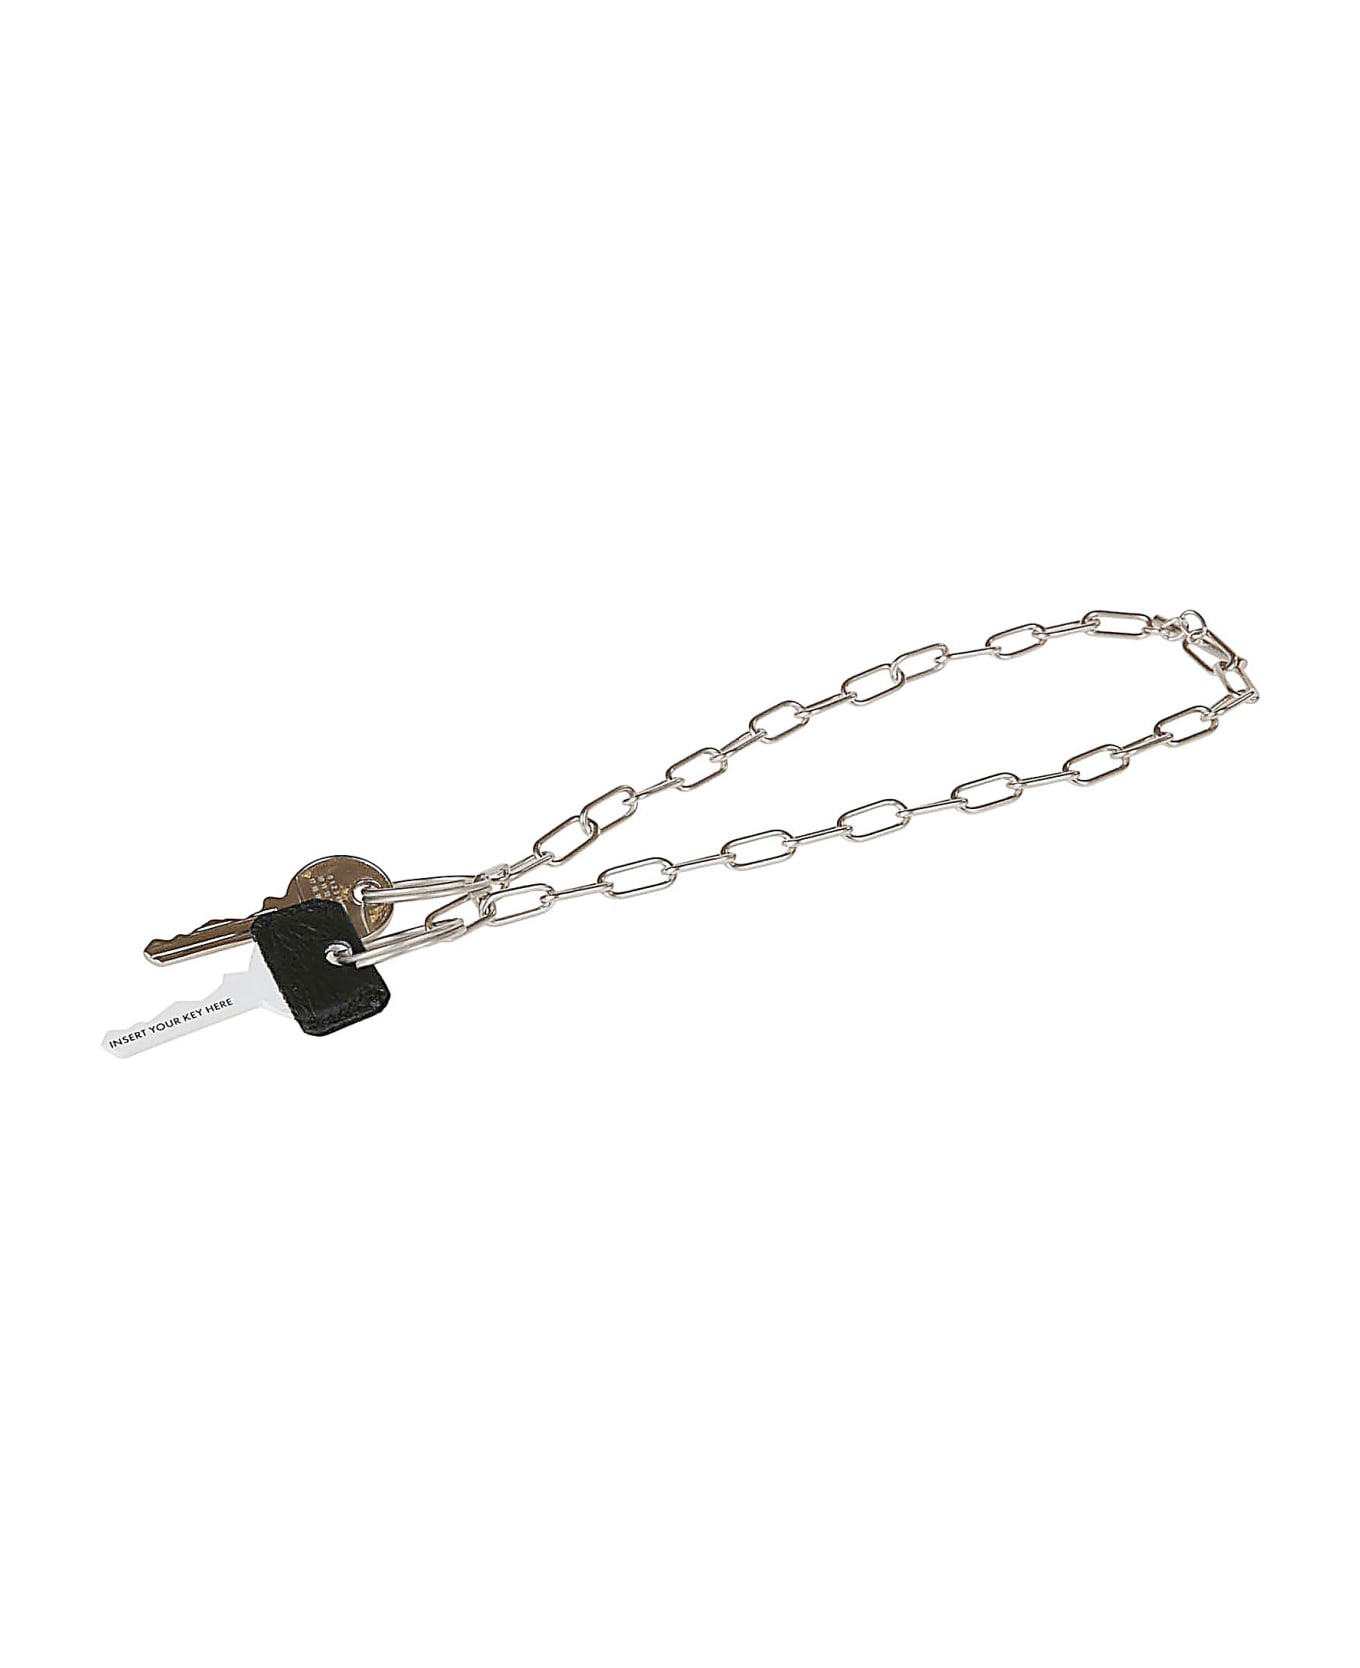 MM6 Maison Margiela Chain Key Holder - Grey/Silver キーリング